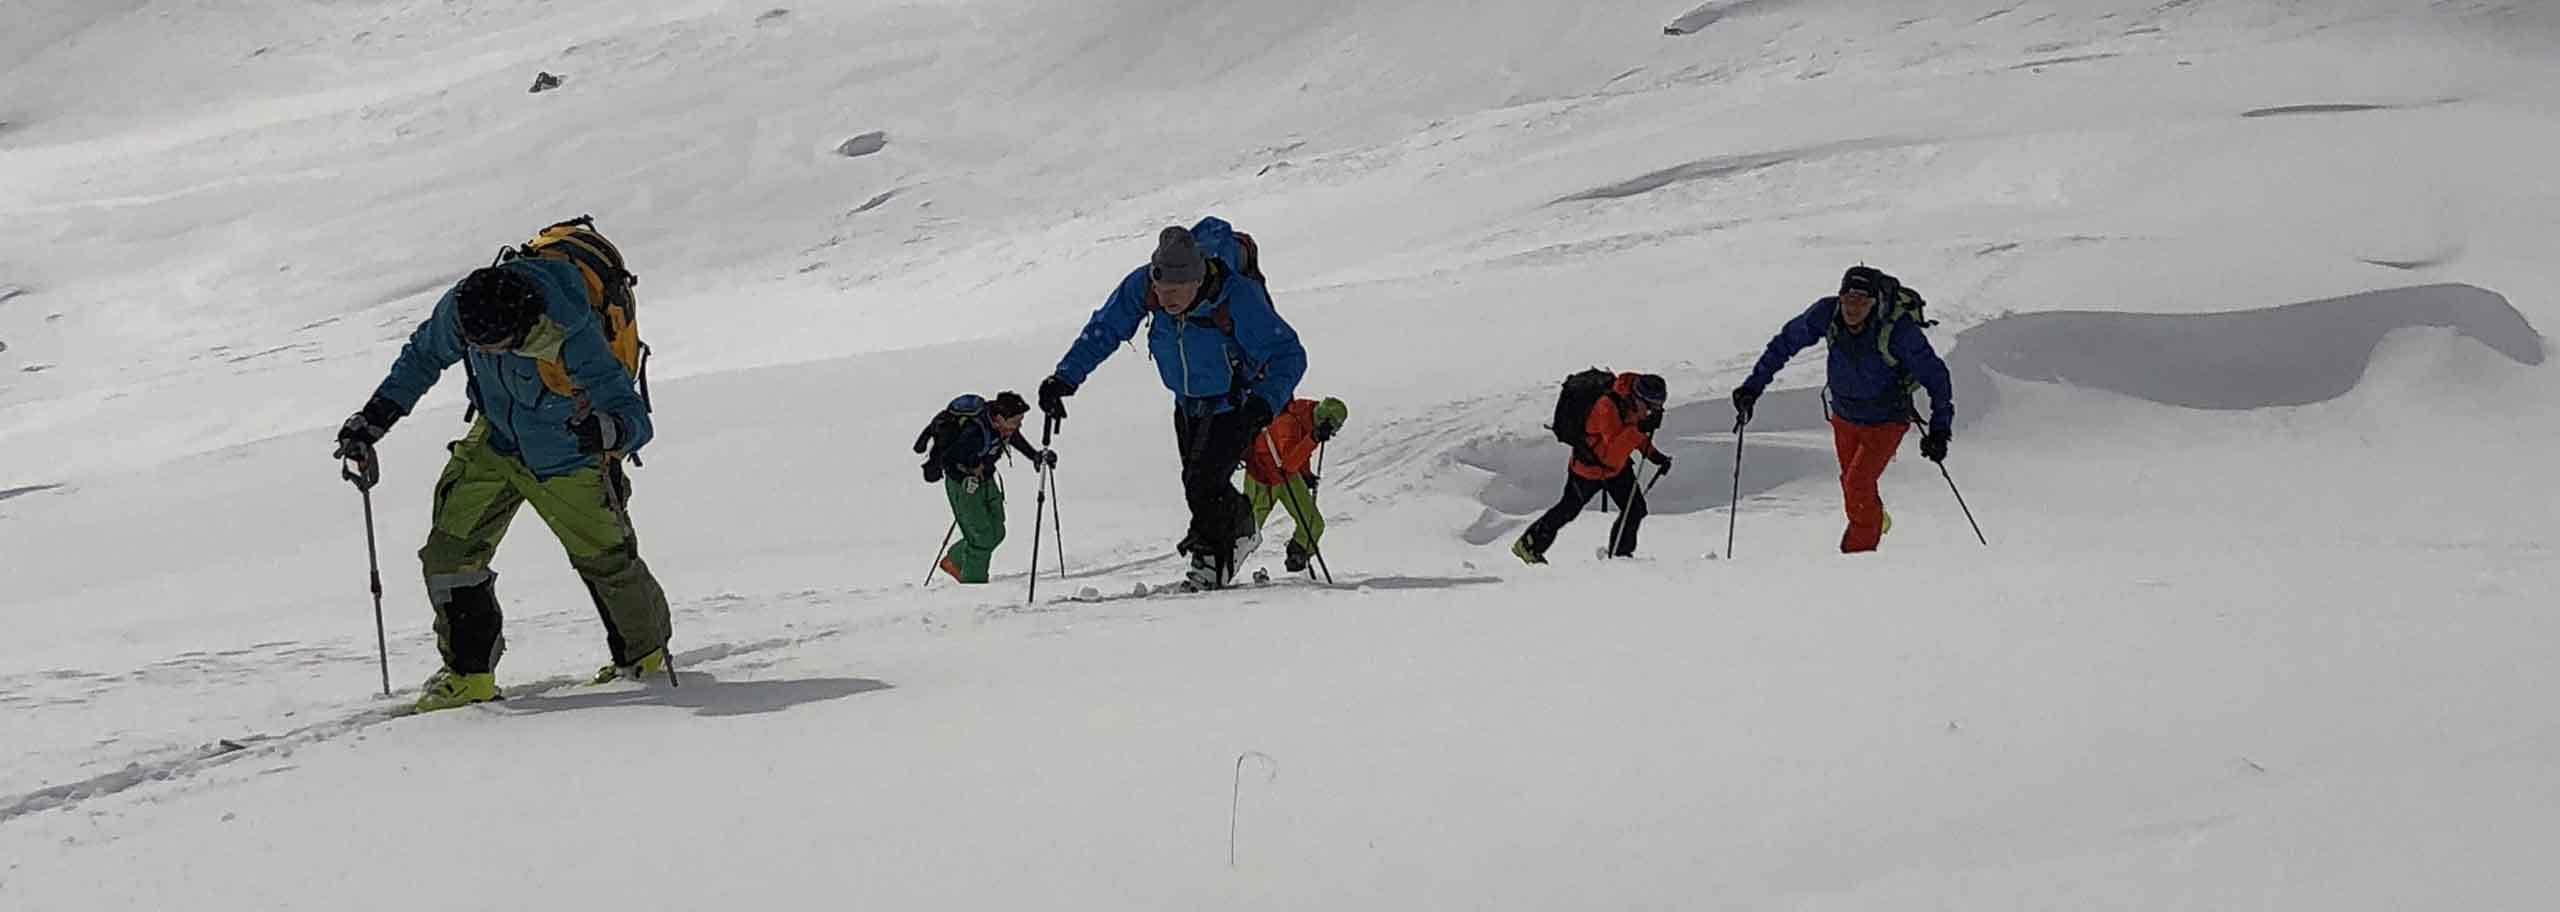 Ski Mountaineering in Monti della Laga with Mountain Guide